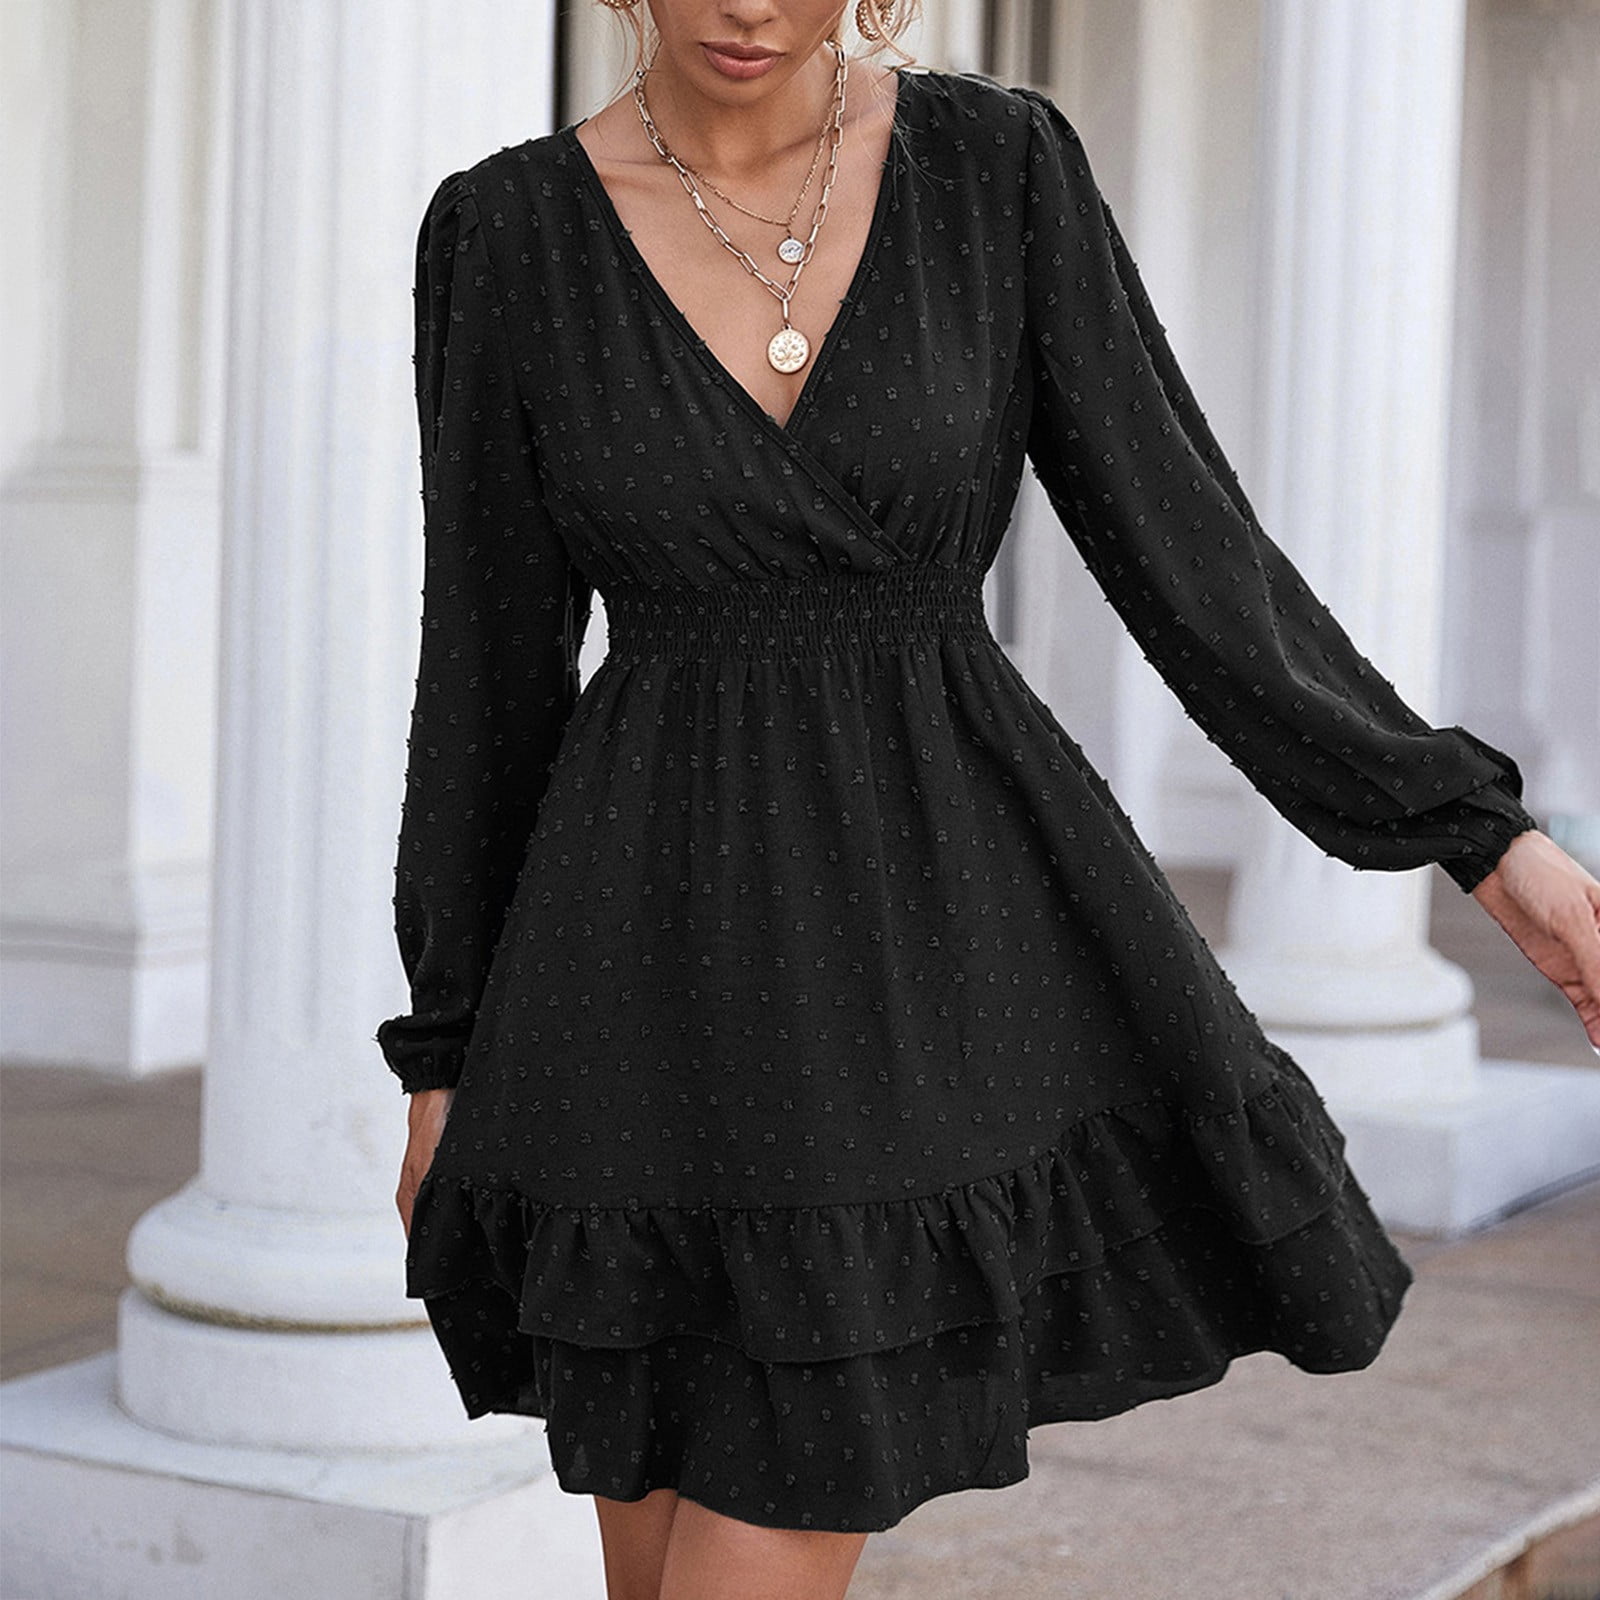 flowy black dress